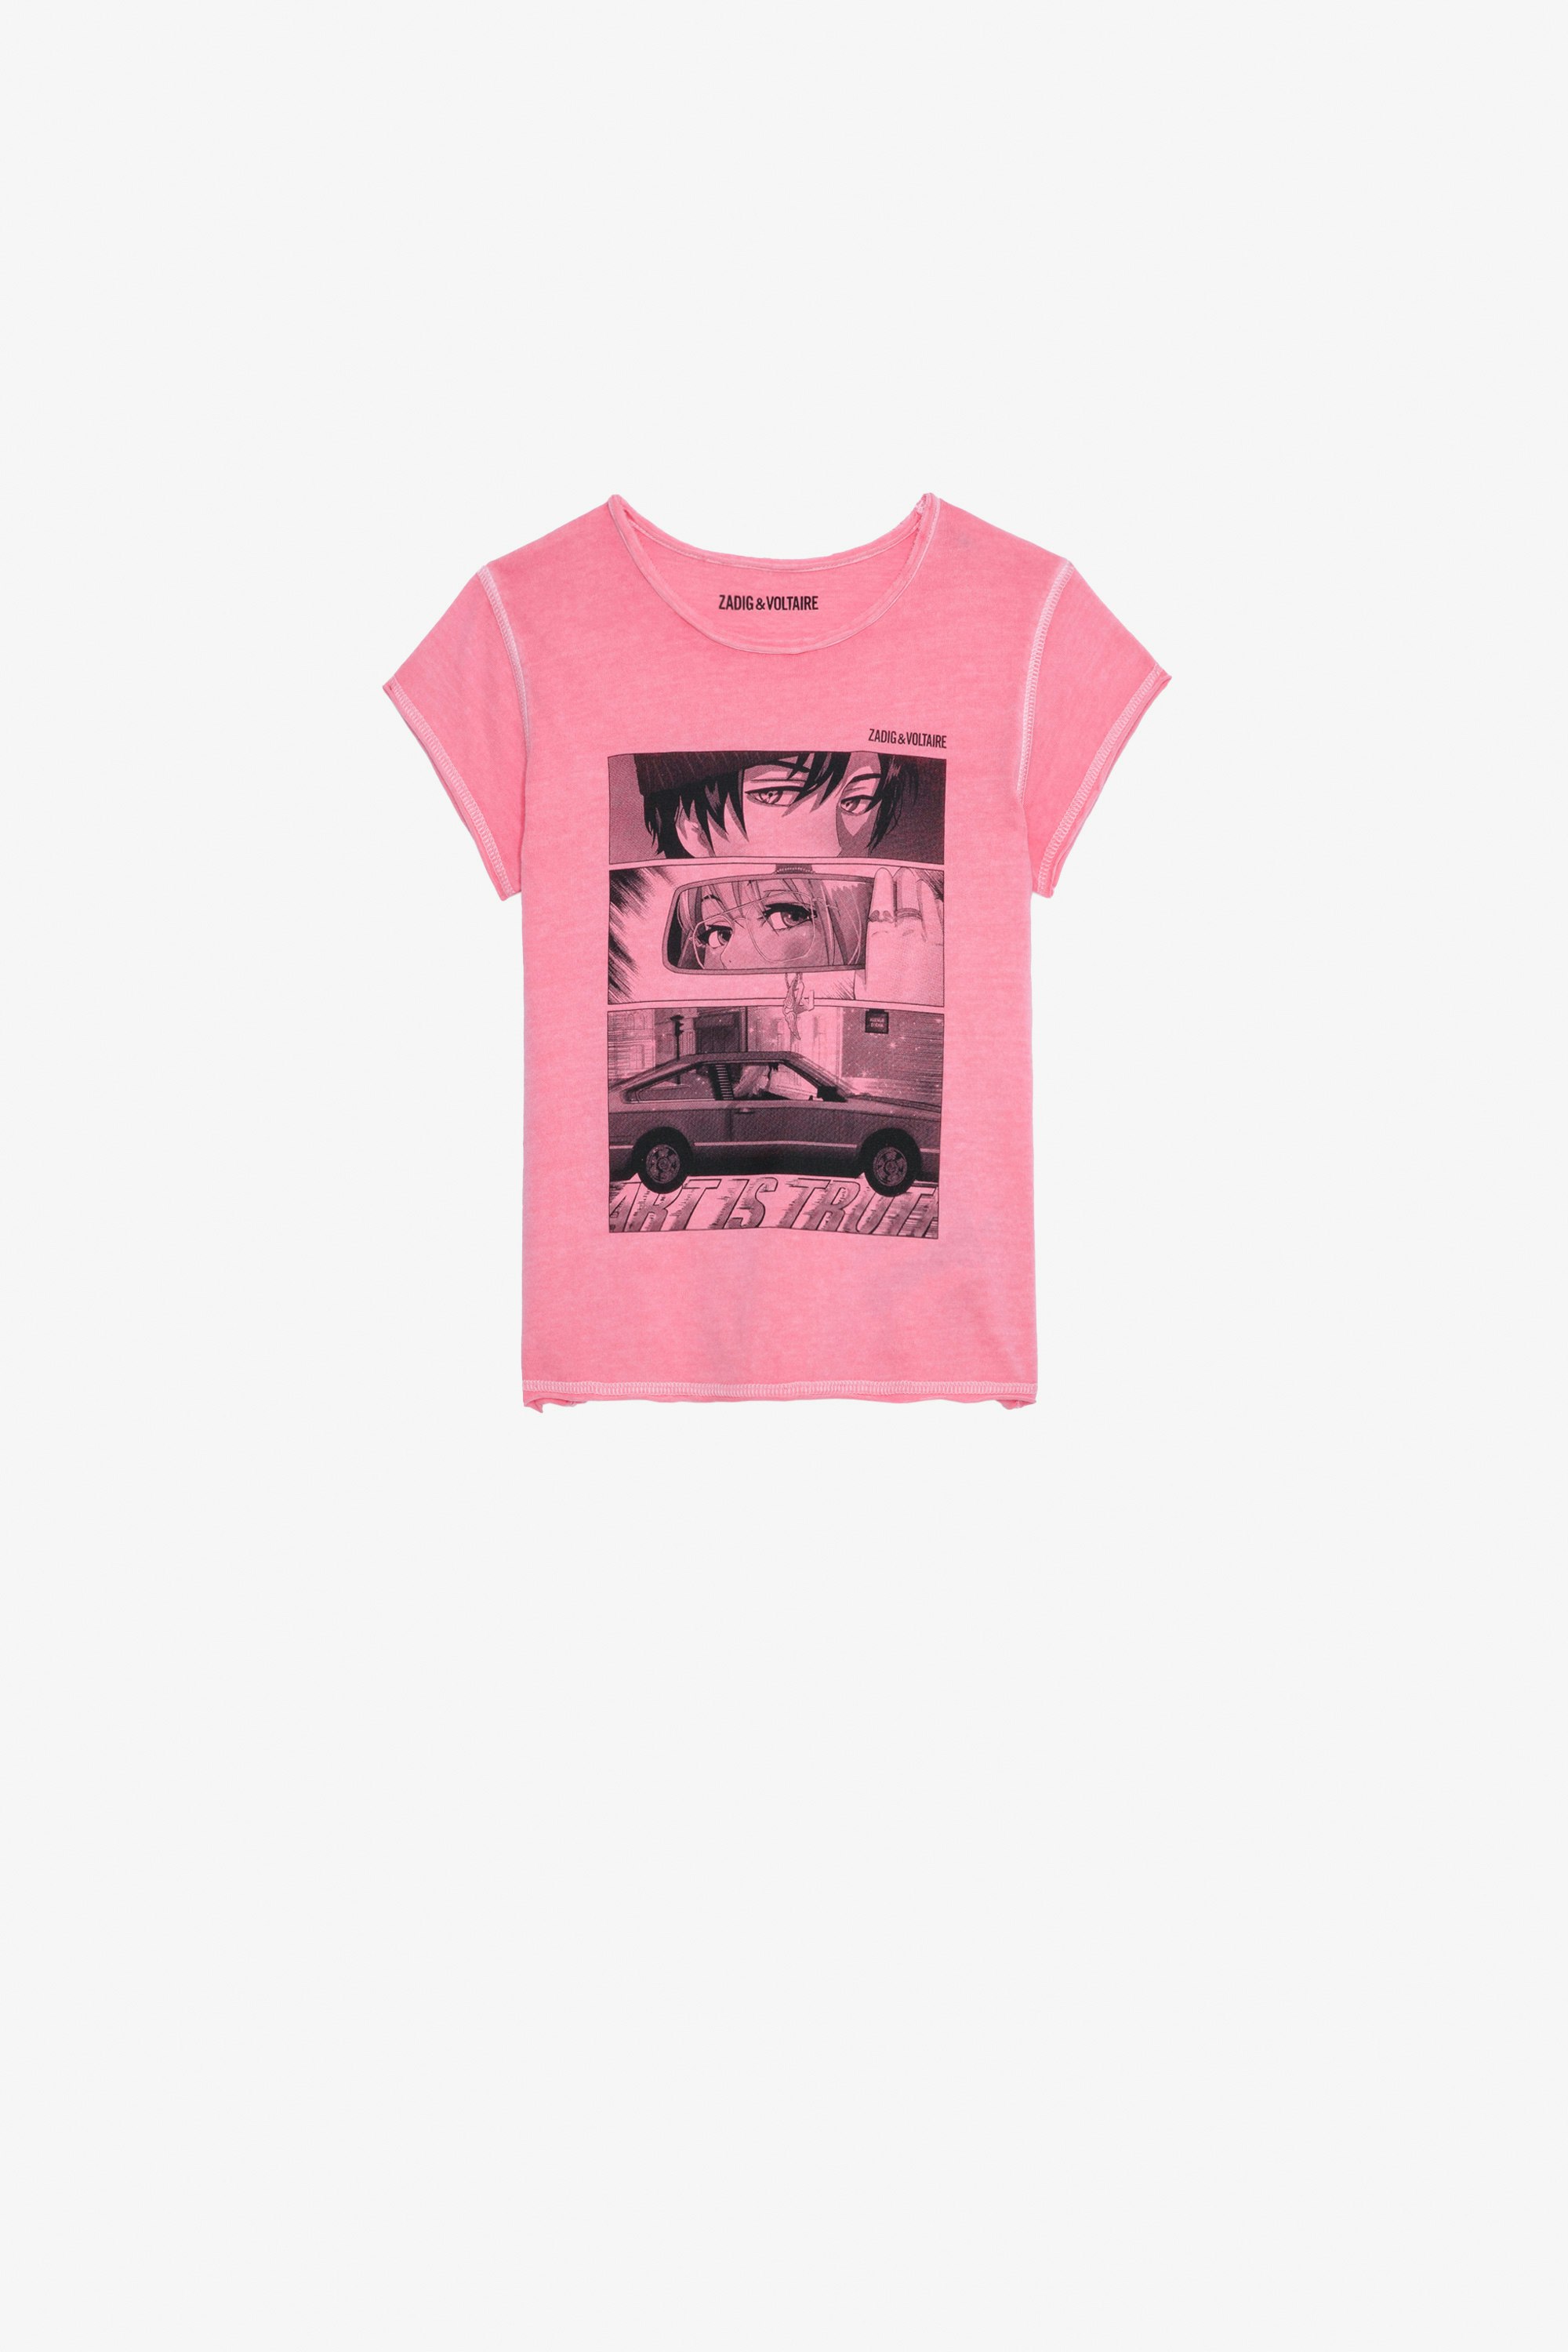 Amber Girls’ T-Shirt - Girls pink short-sleeved cotton jersey T-shirt with print.